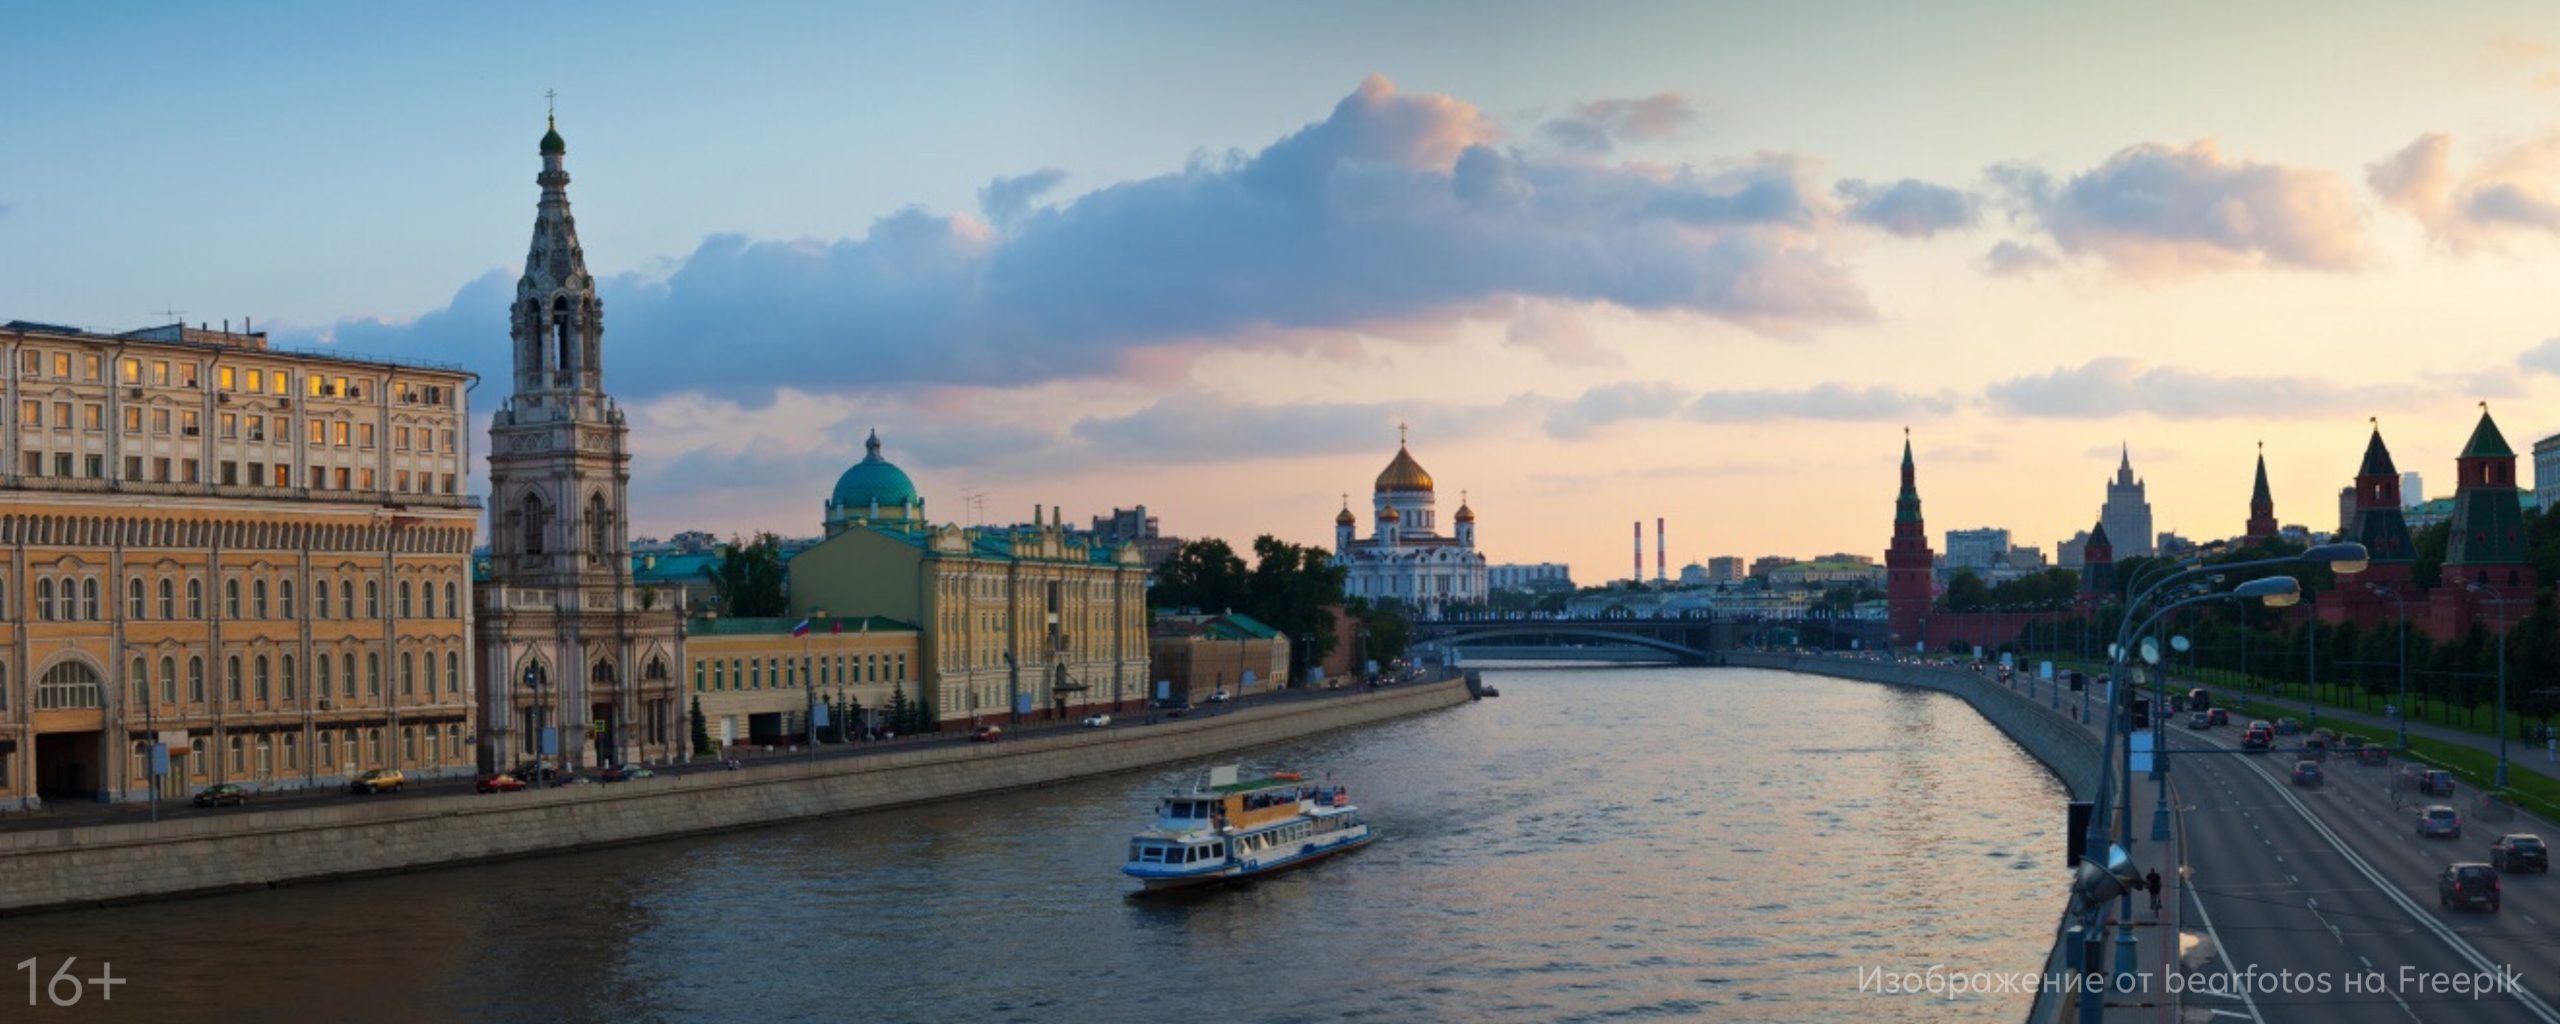 Туристический аналог «Пушкинской карты» может появиться в России.